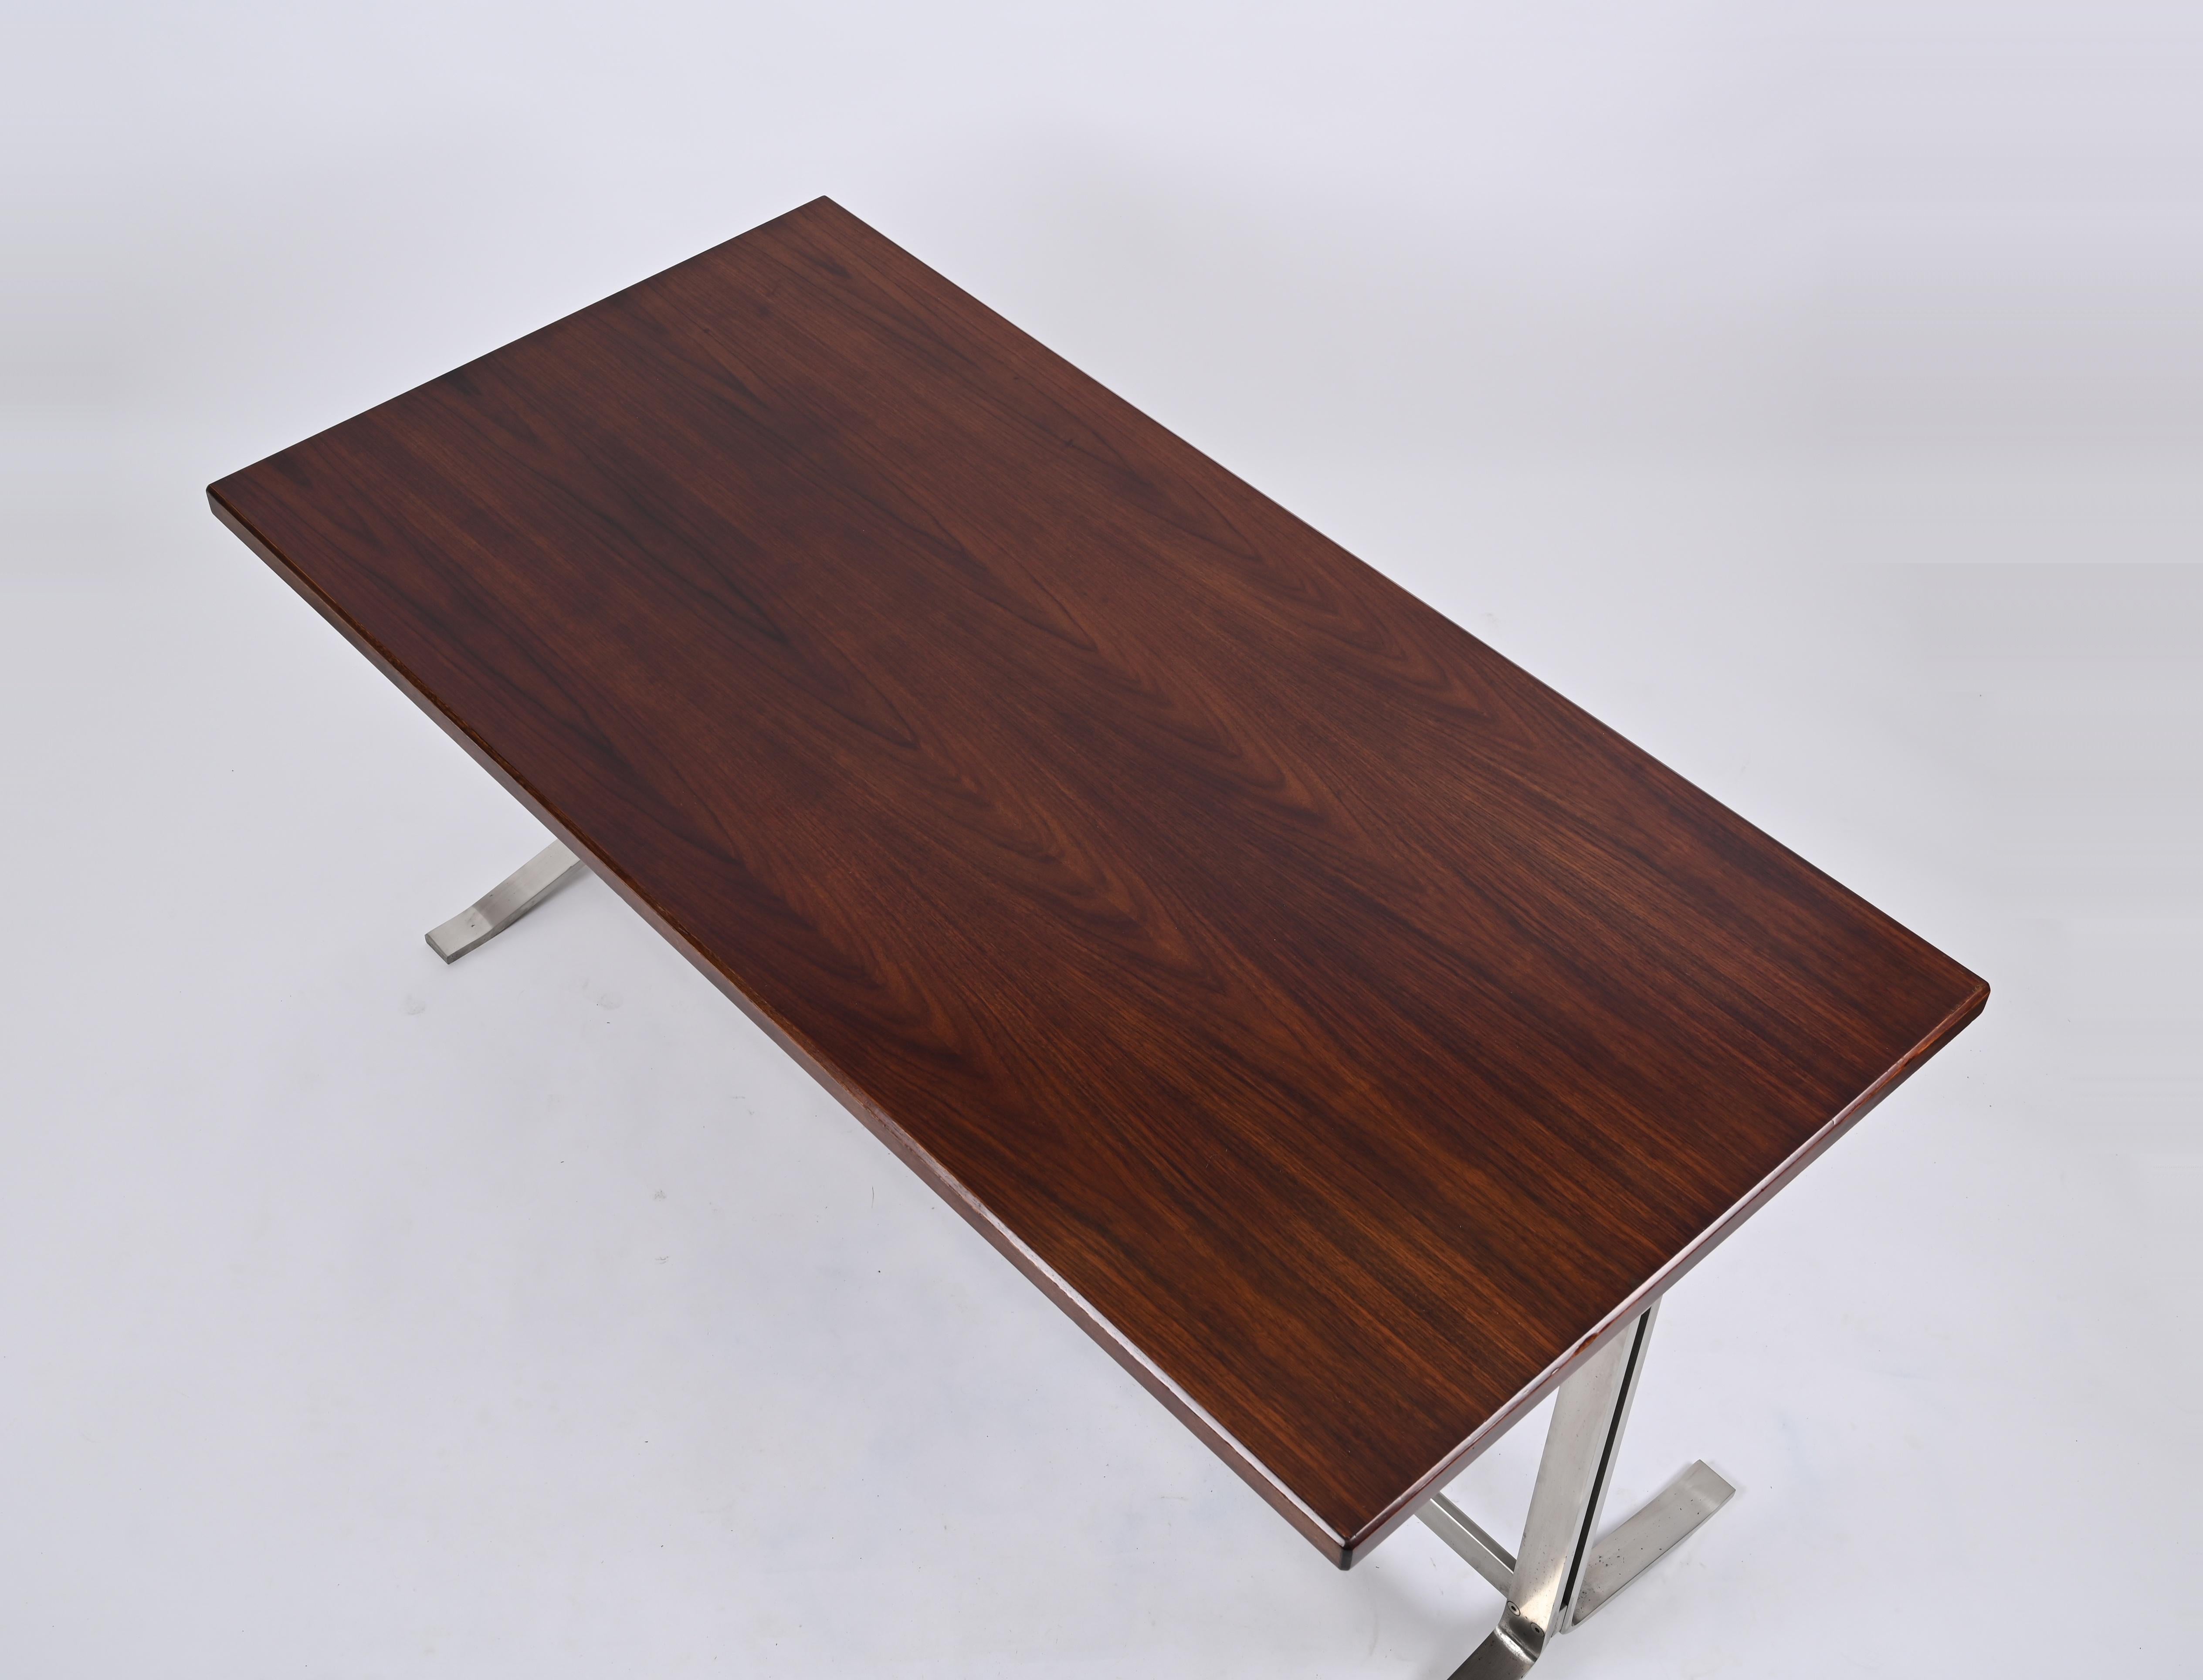 Erstaunlicher Schreibtisch, entworfen von Gianni Moscatelli und hergestellt von Formanova in Italien im Jahr 1965.

Der Schreibtisch hat eine rechteckige Tischplatte aus Nussbaumholz mit wunderschöner Maserung. Die Qualität des Holzes ist